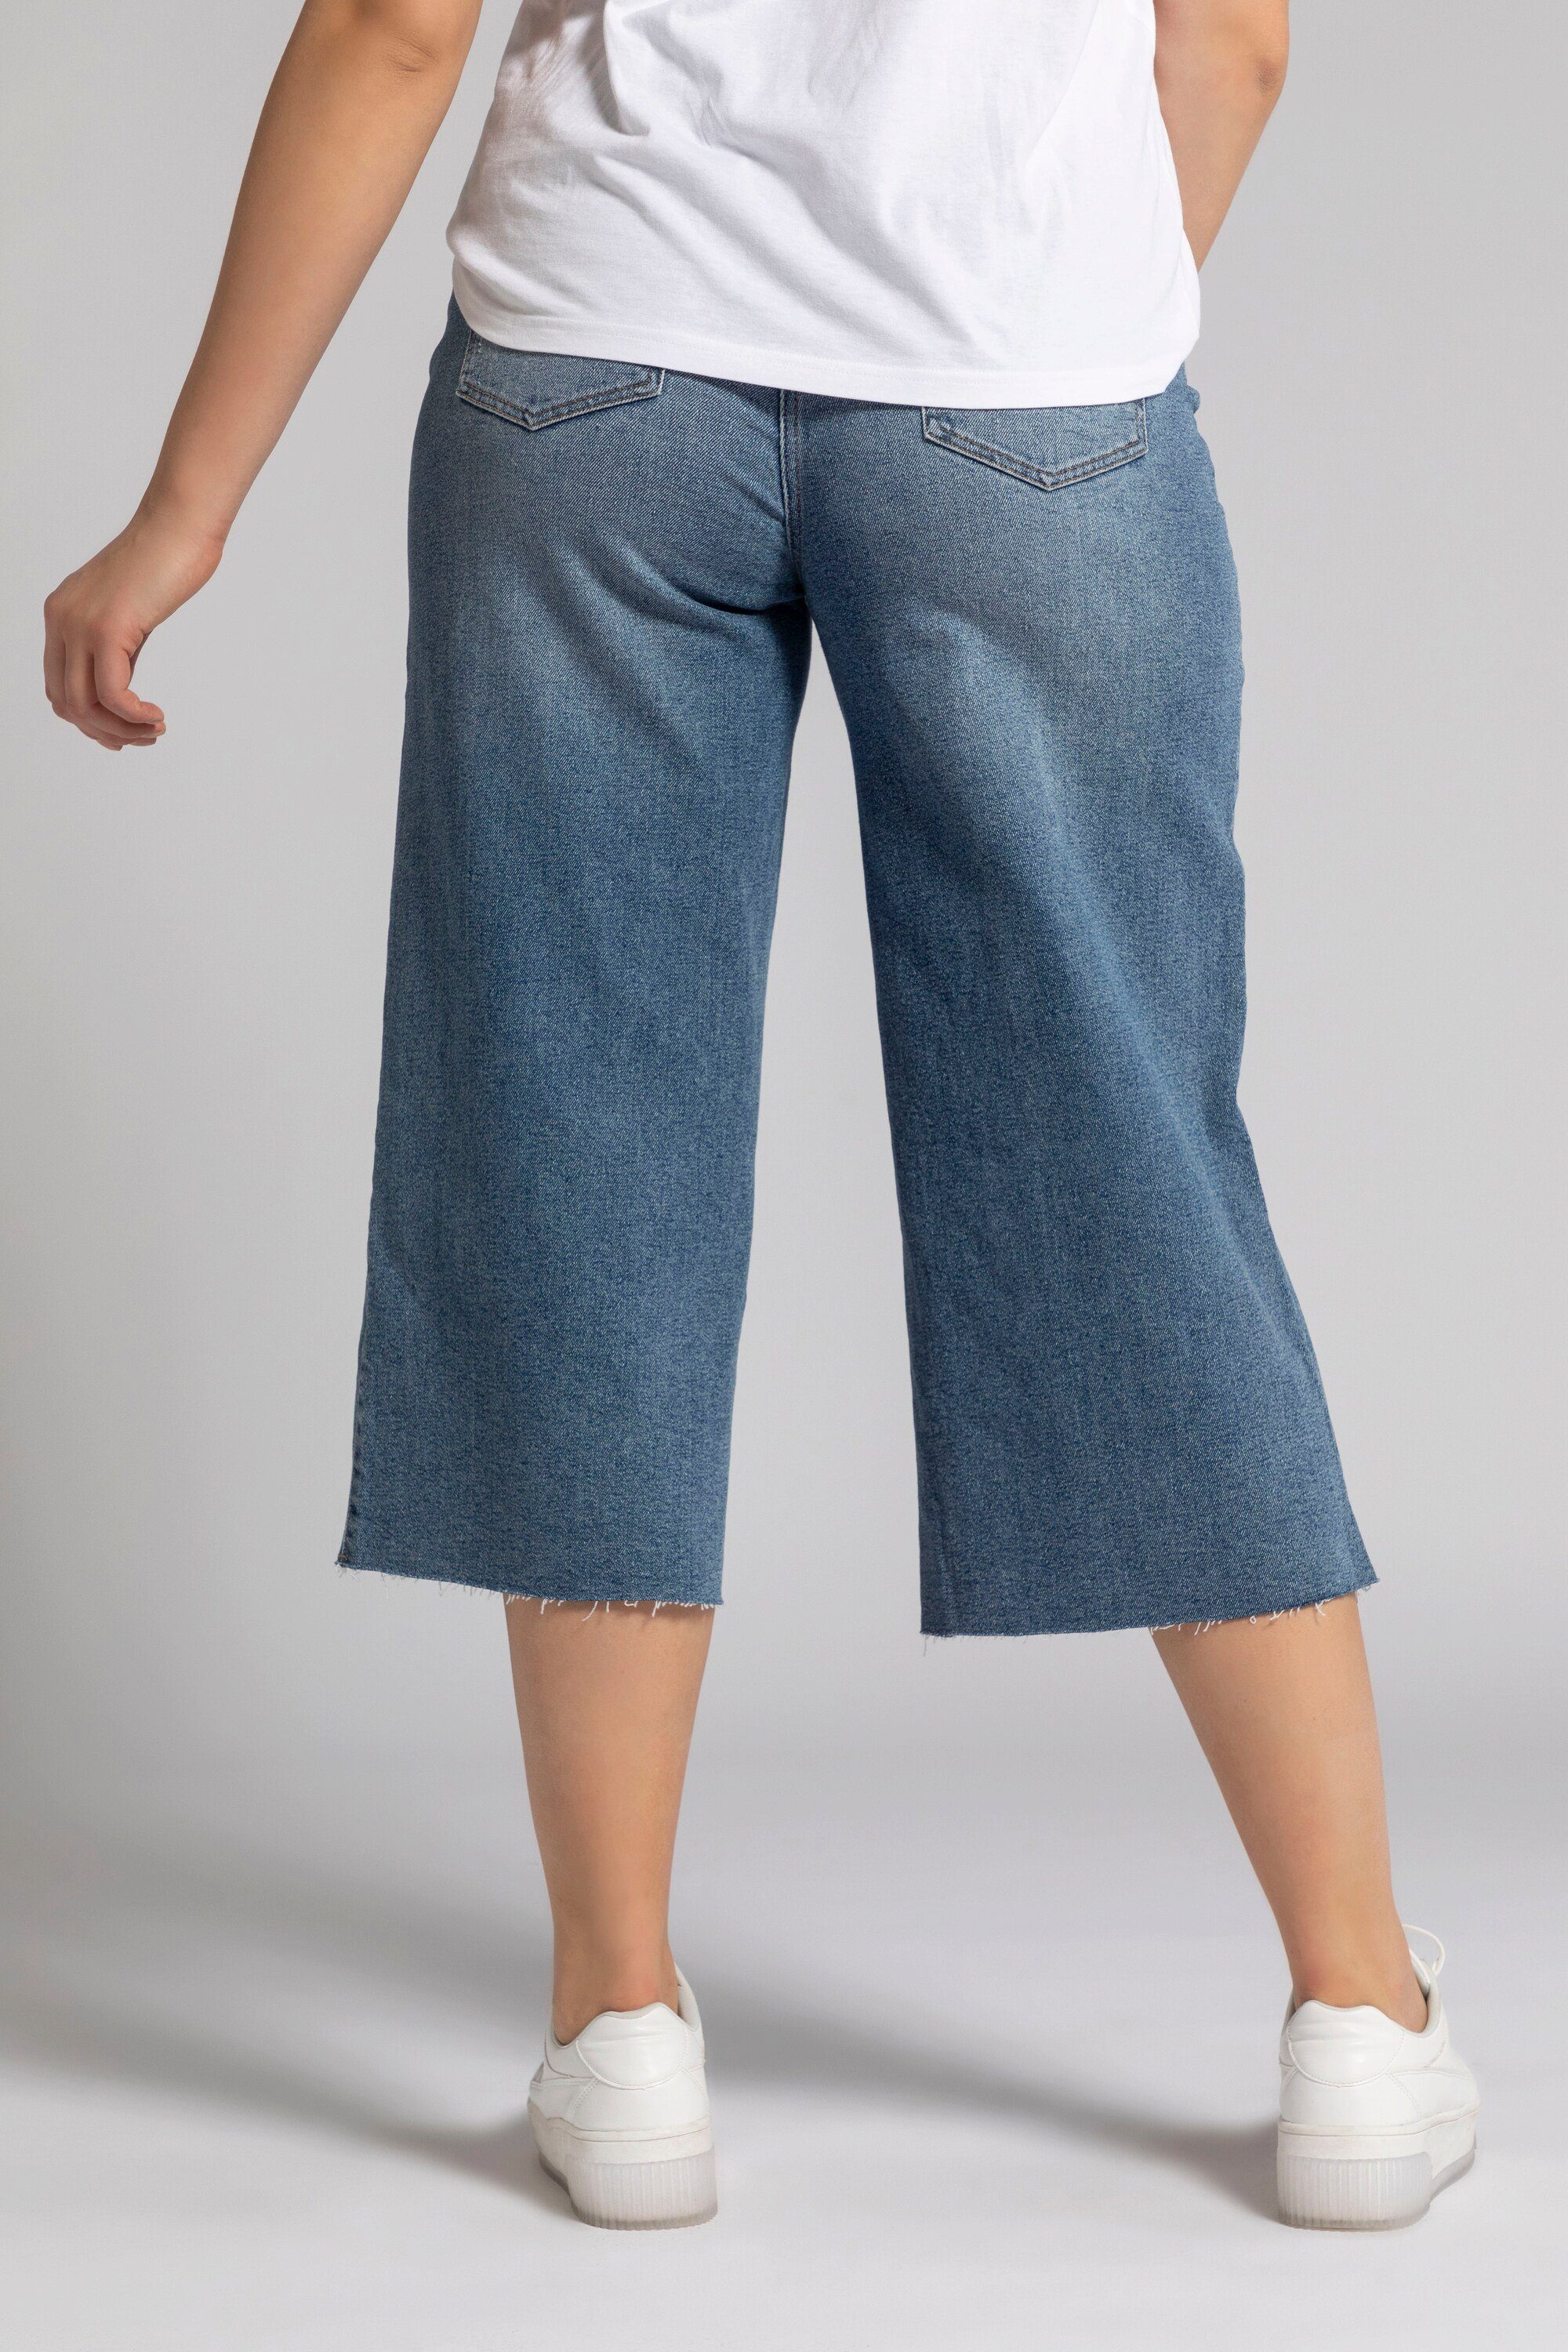 Fransensaum weites Culottes Bein Jeans Studio Culotte Untold Elastikbund